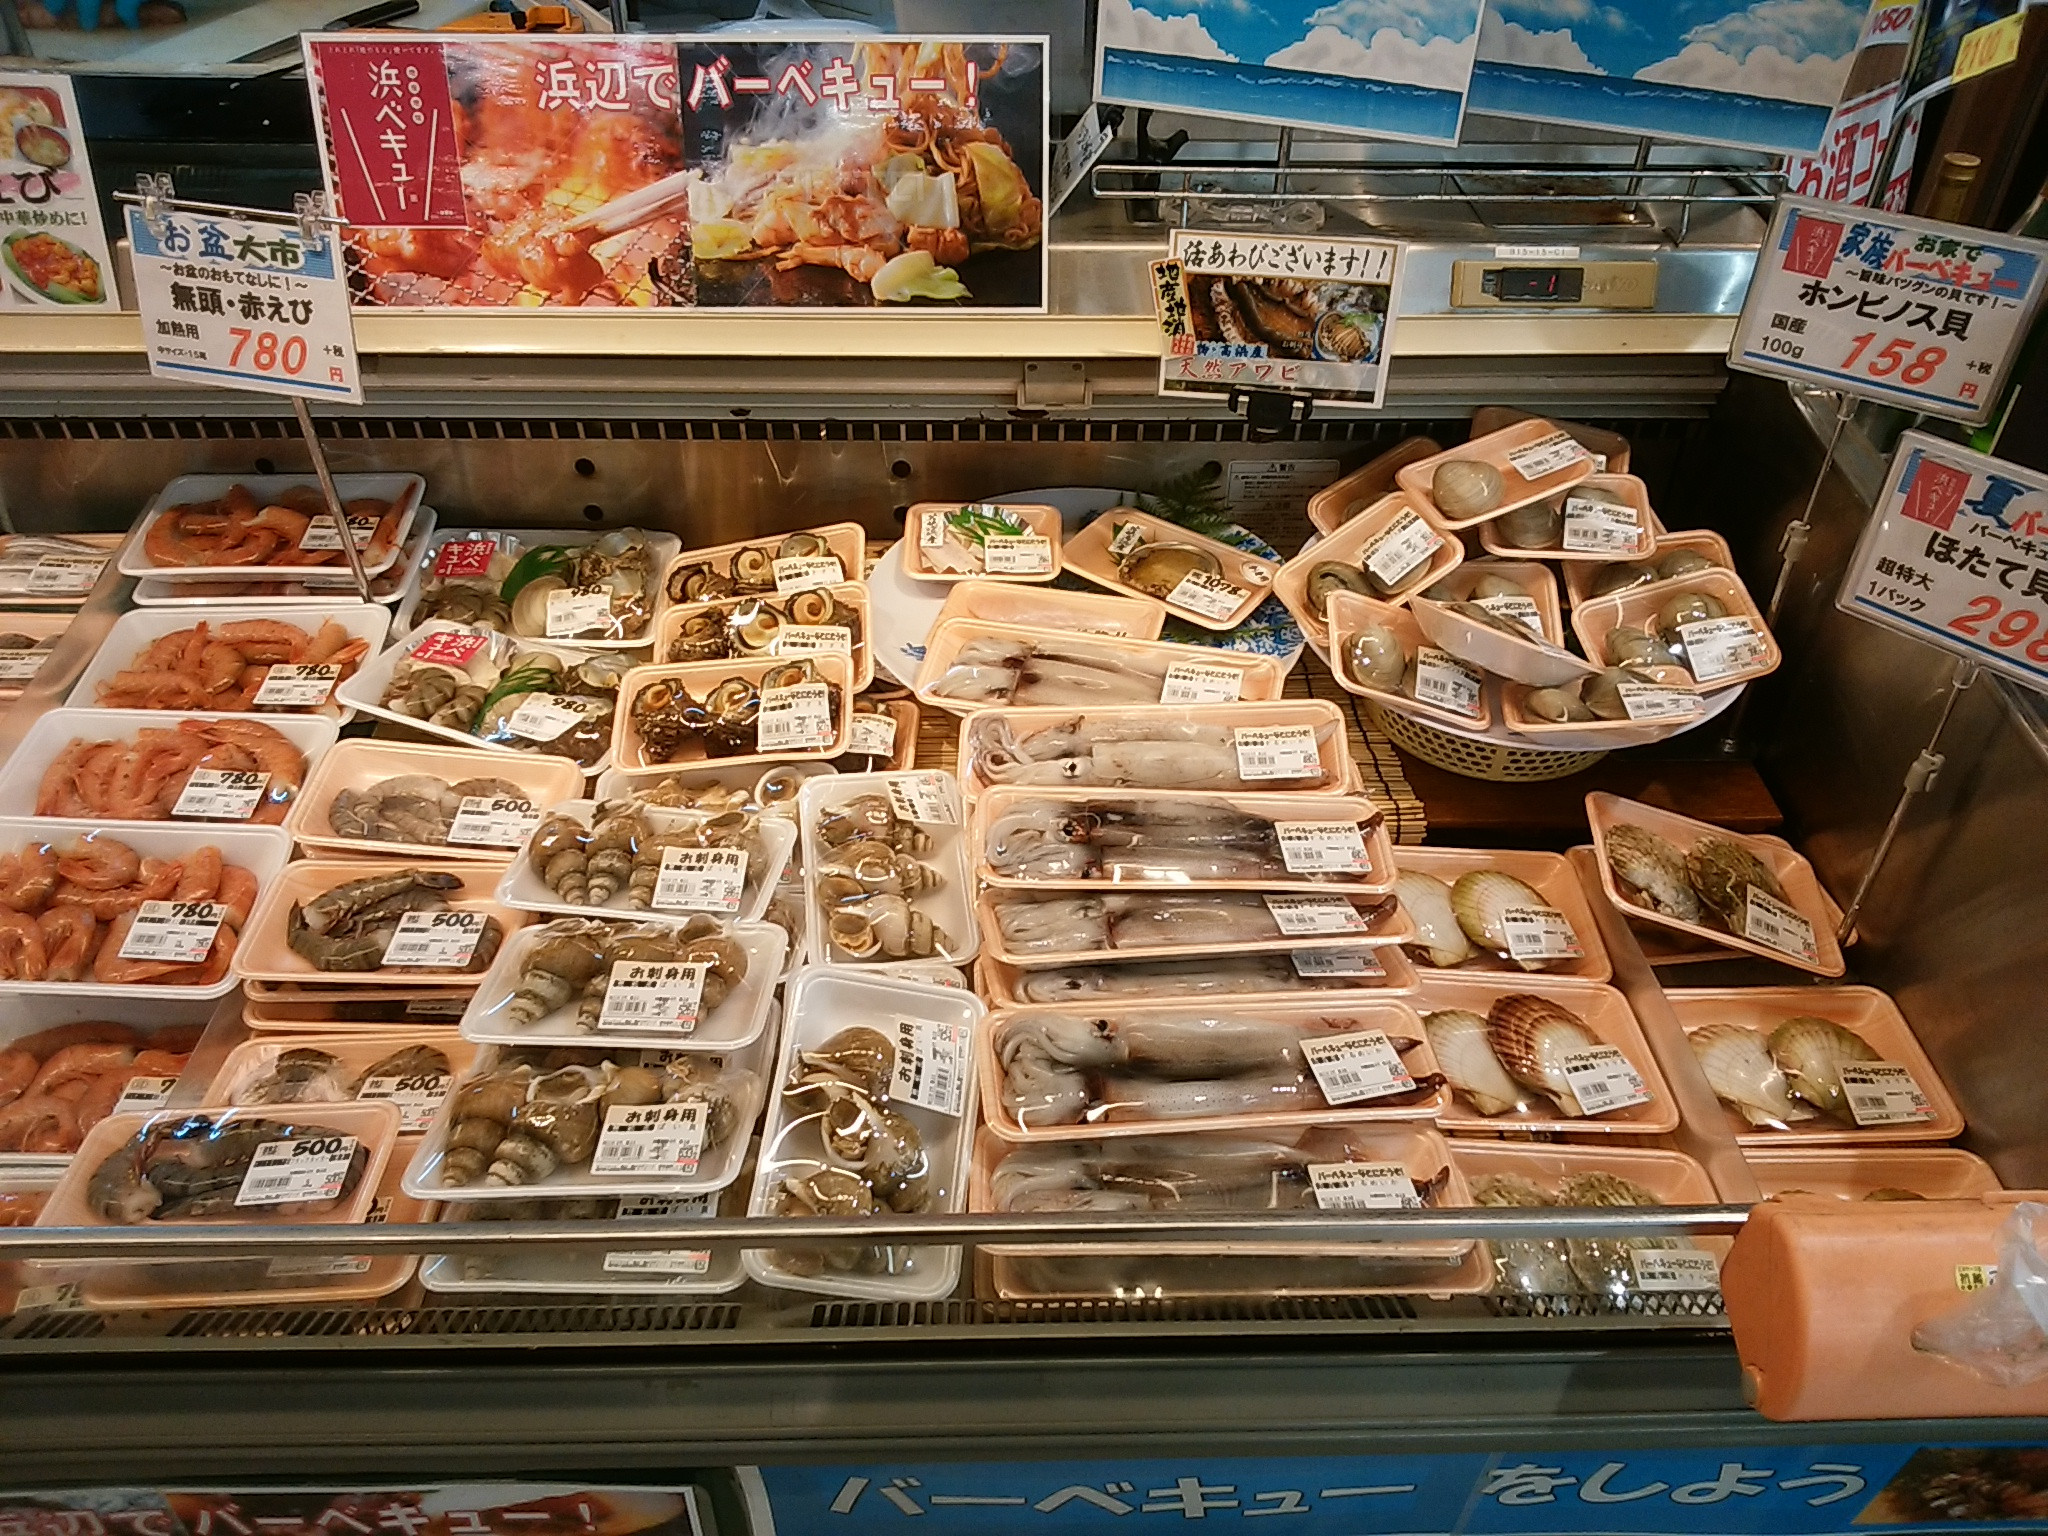 株)伴 製麺所 on X: 本日福井県高浜町のサニーマートで、鍋焼きうどんの特売をします！！  / X